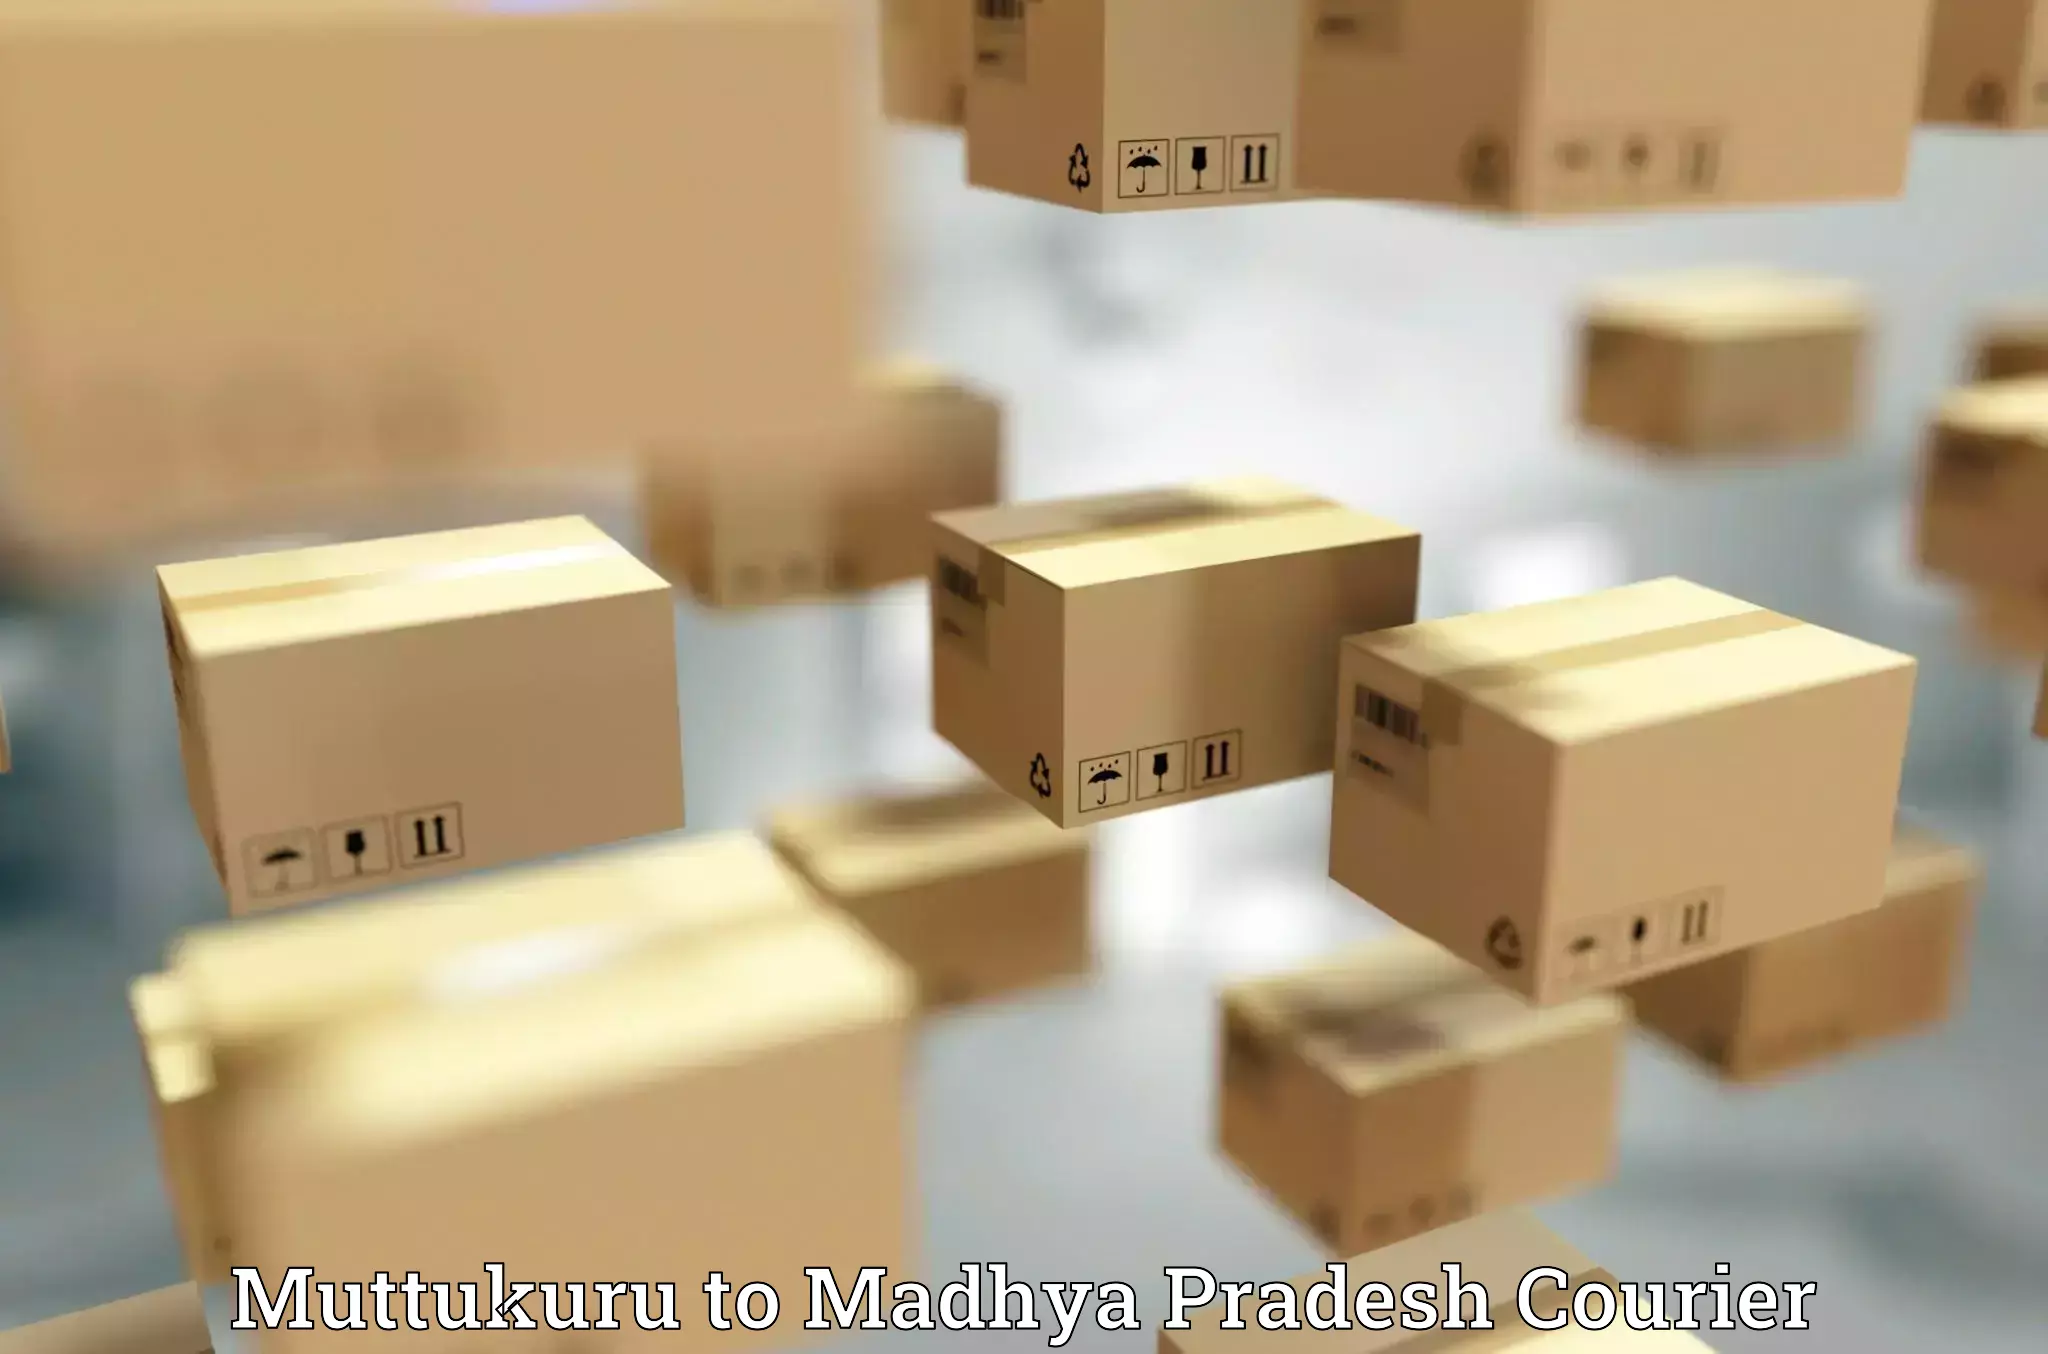 Urgent courier needs Muttukuru to Madhya Pradesh